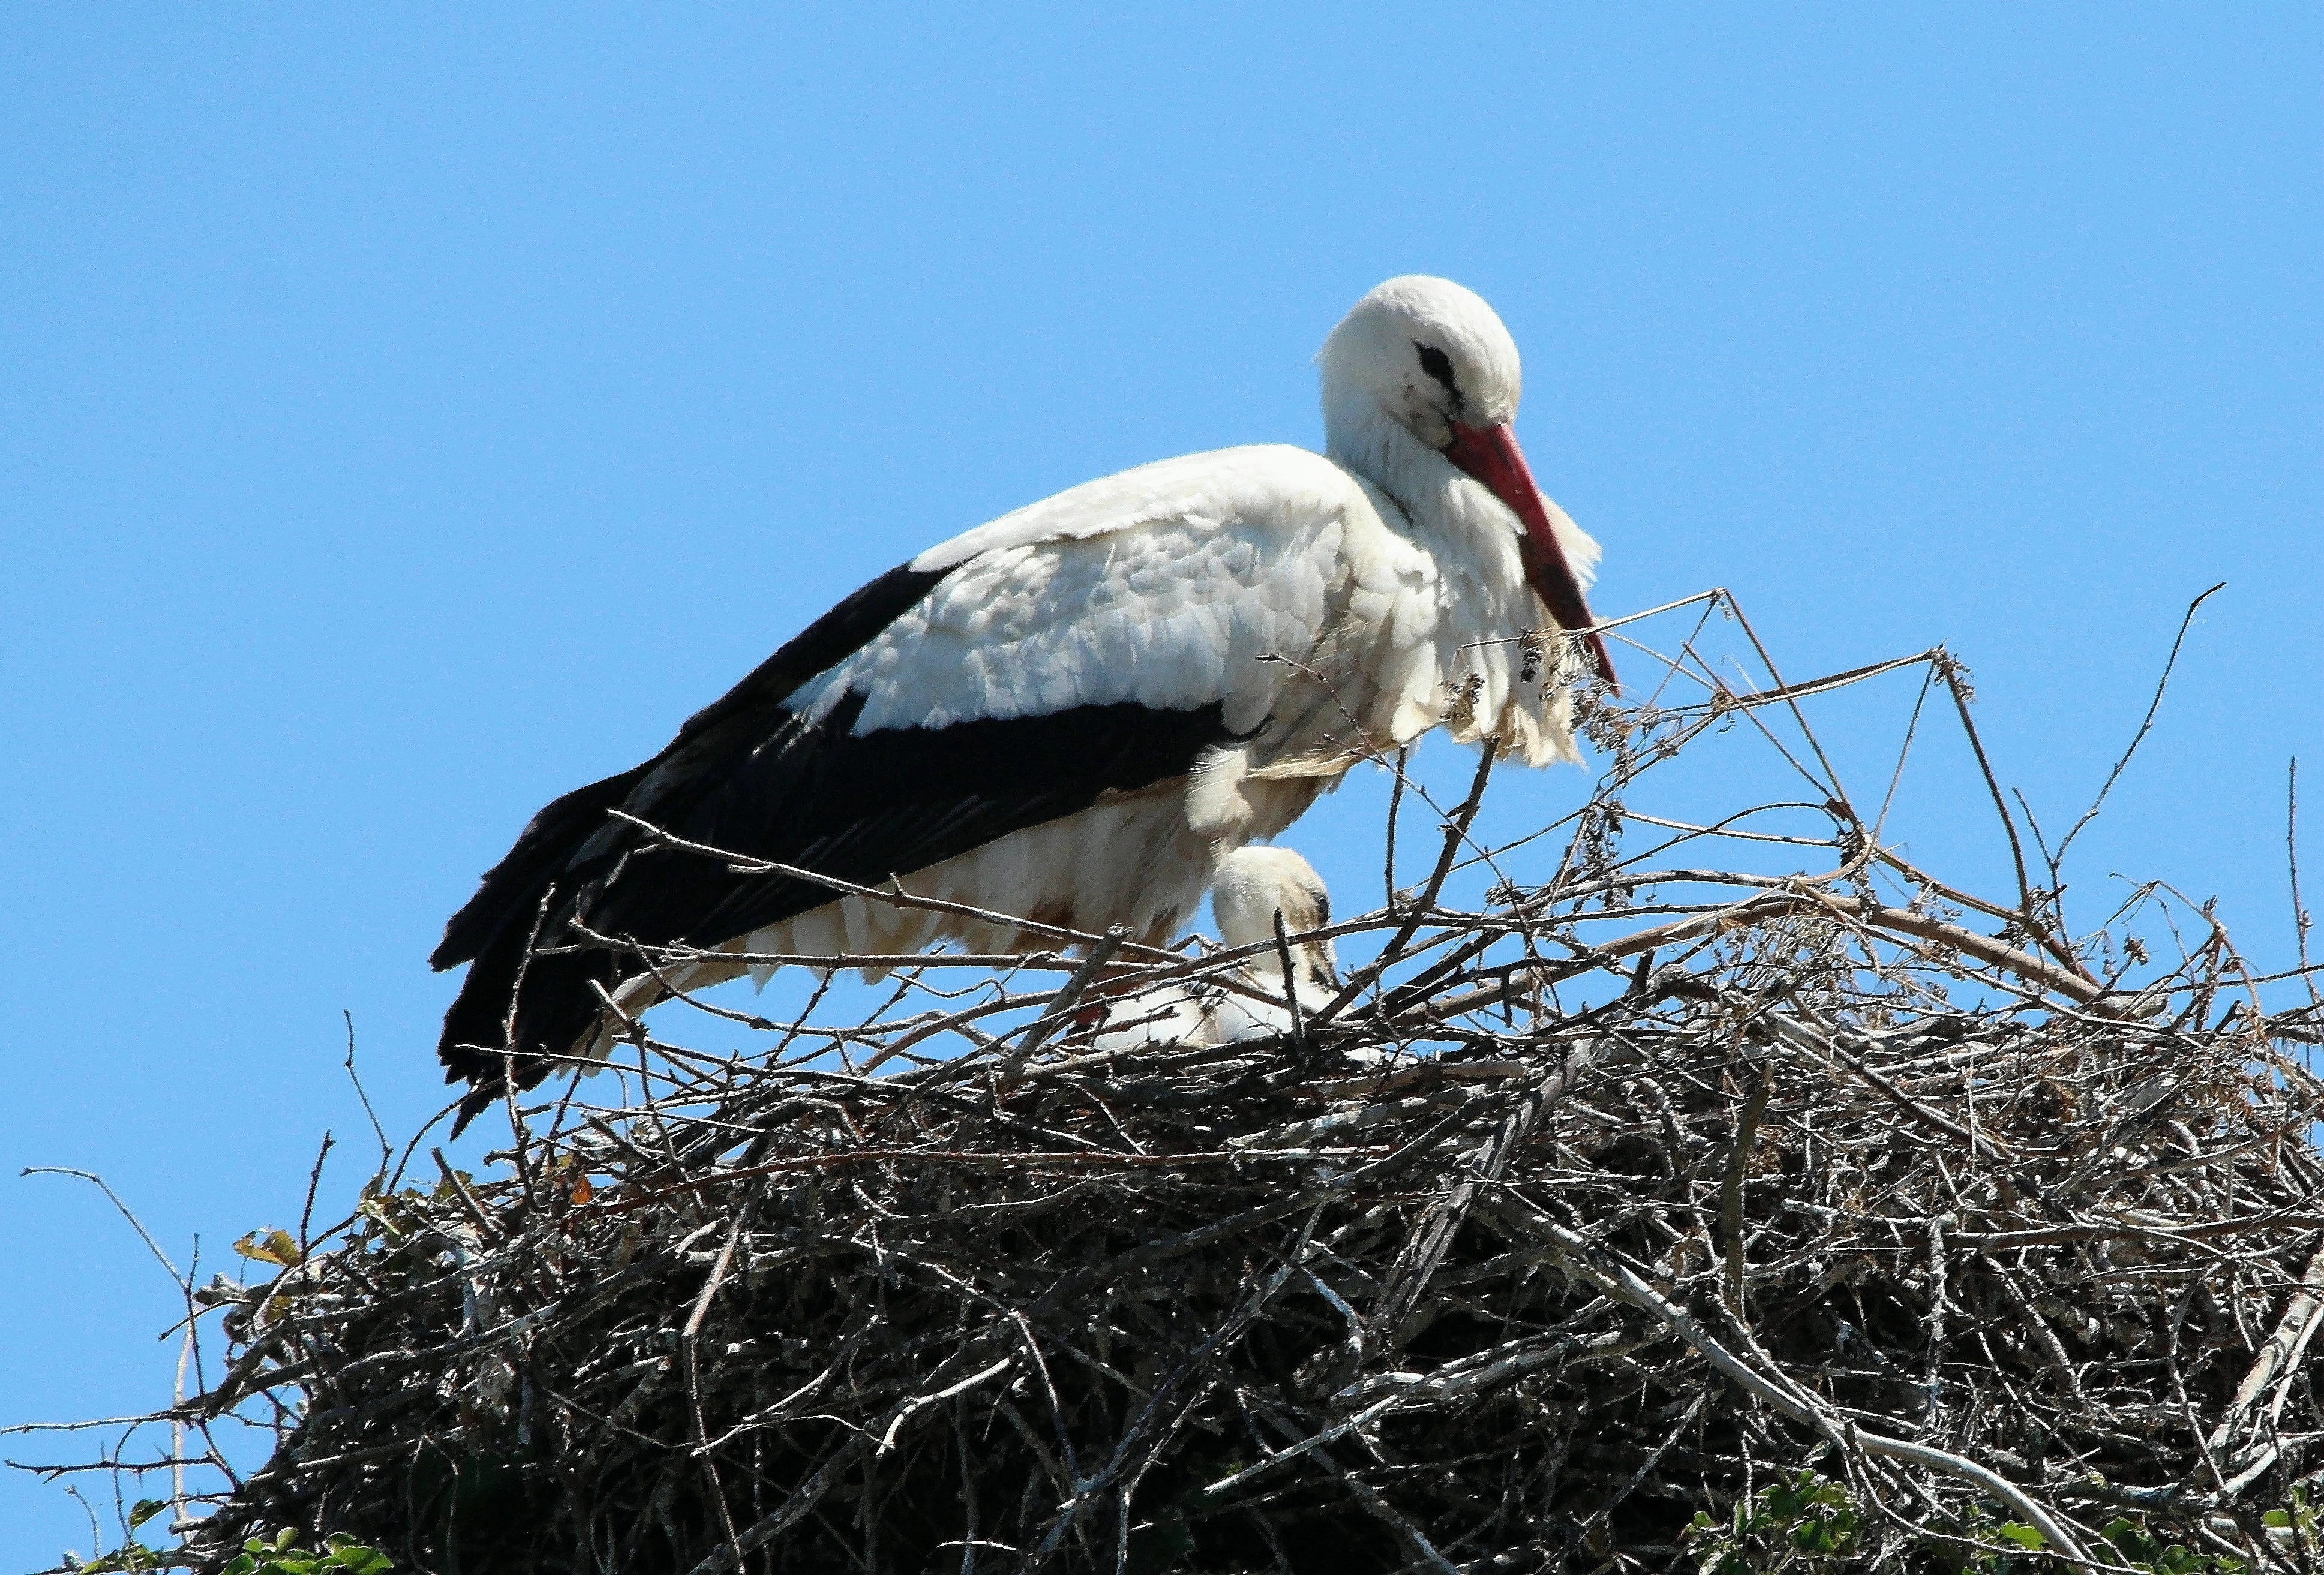 white and black long beak bird on nest during daytime